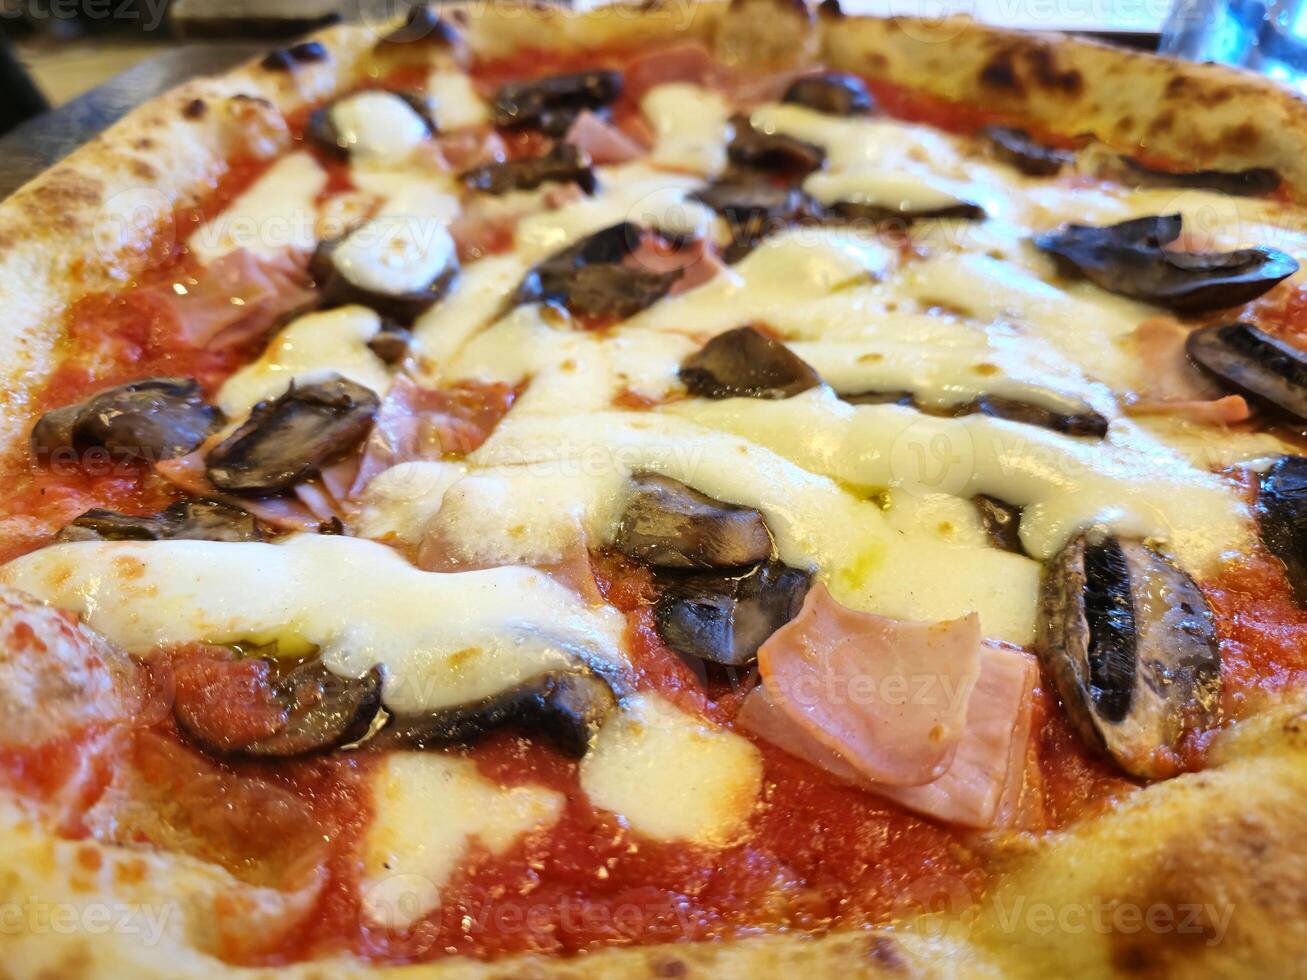 smakelijk pizza dichtbij visie achtergrond. Italiaans pizzeria atmosfeer foto